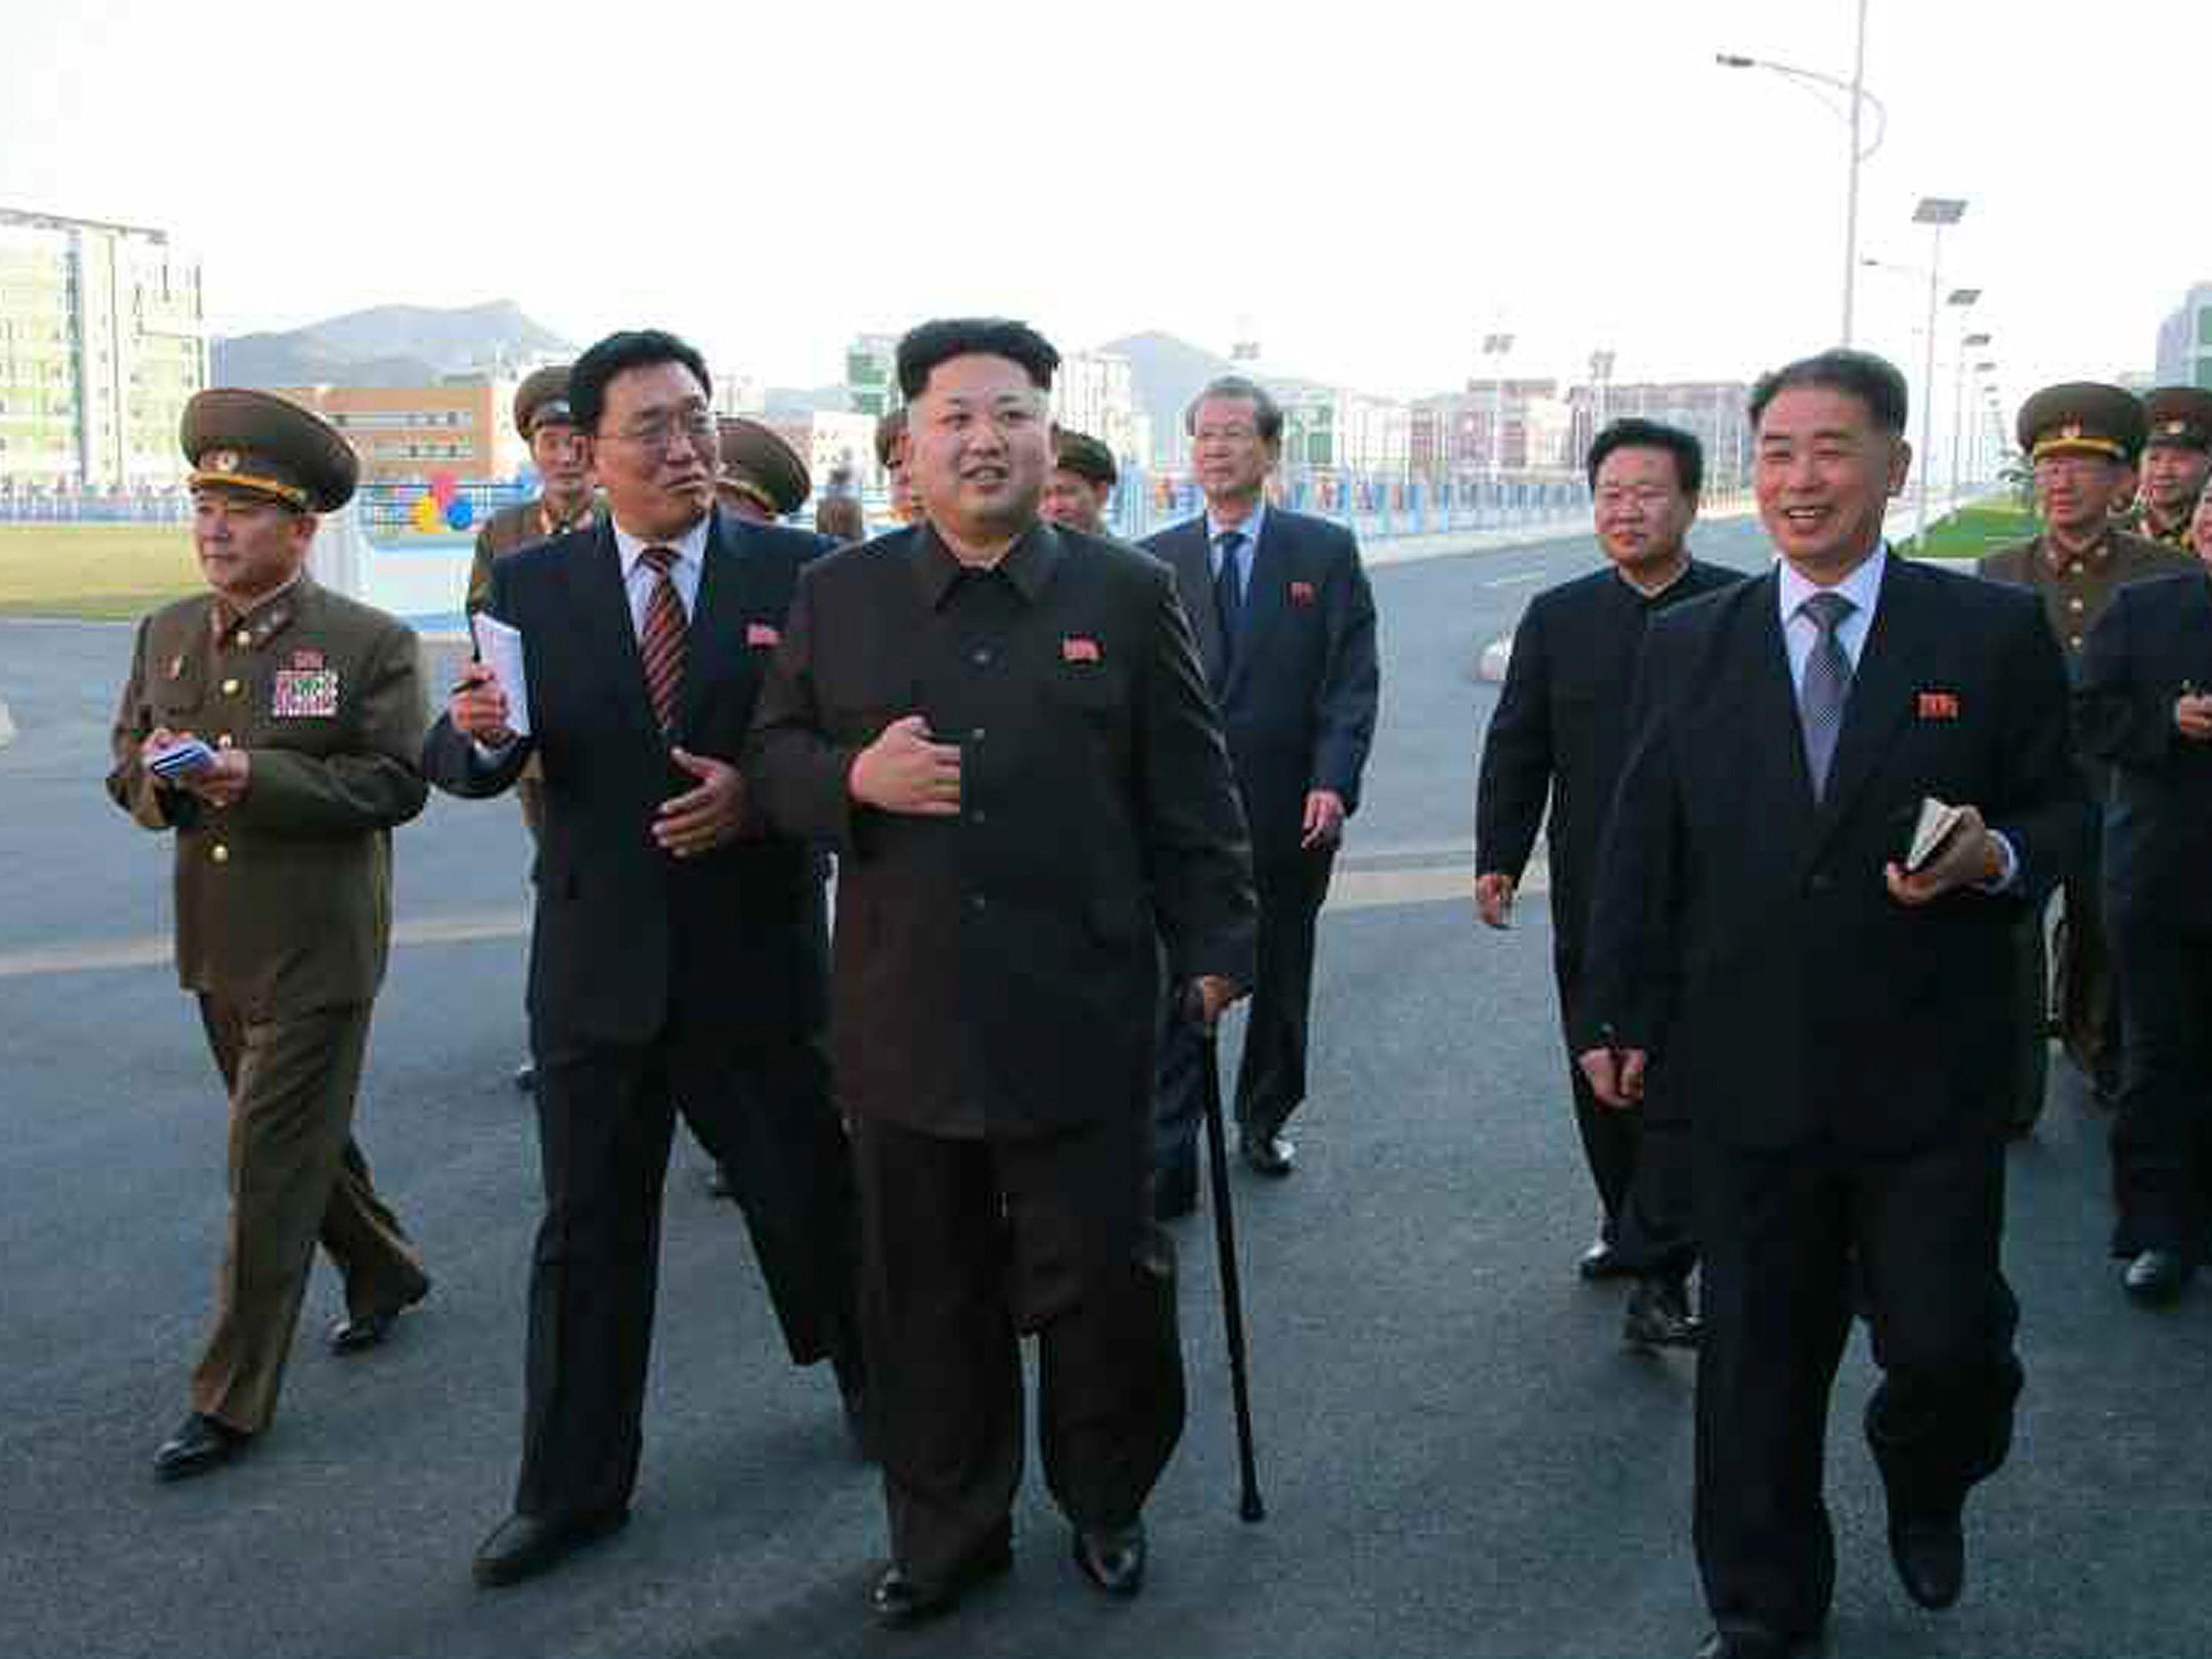 Seit 40 Tagen ward Kim Jong Un nicht mehr öffentlich gesehen, nun ist er wieder aufgetaucht.